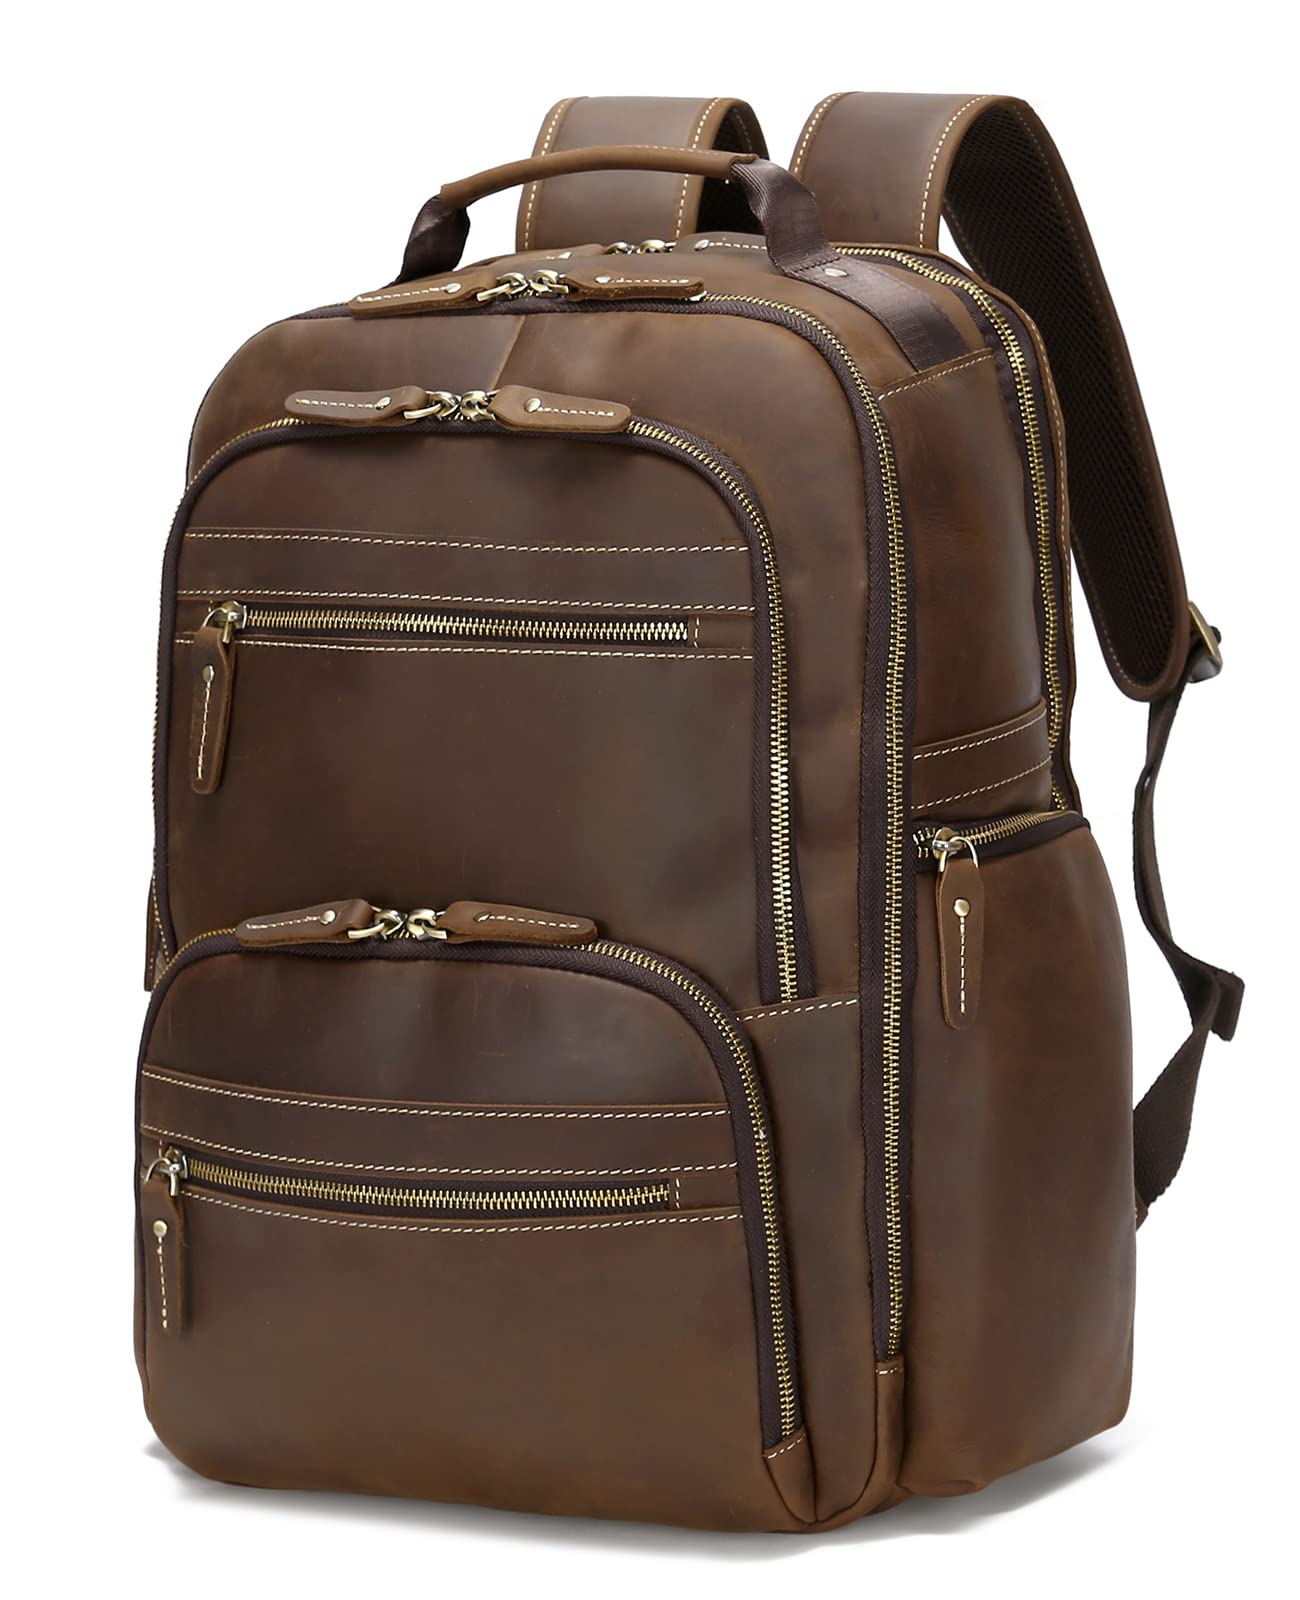 送料無料Taertii Genuine Leather Backpack For Men Vintage 17.3 inch Laptop Bag Large Capacity Business Travel Hiking Overn